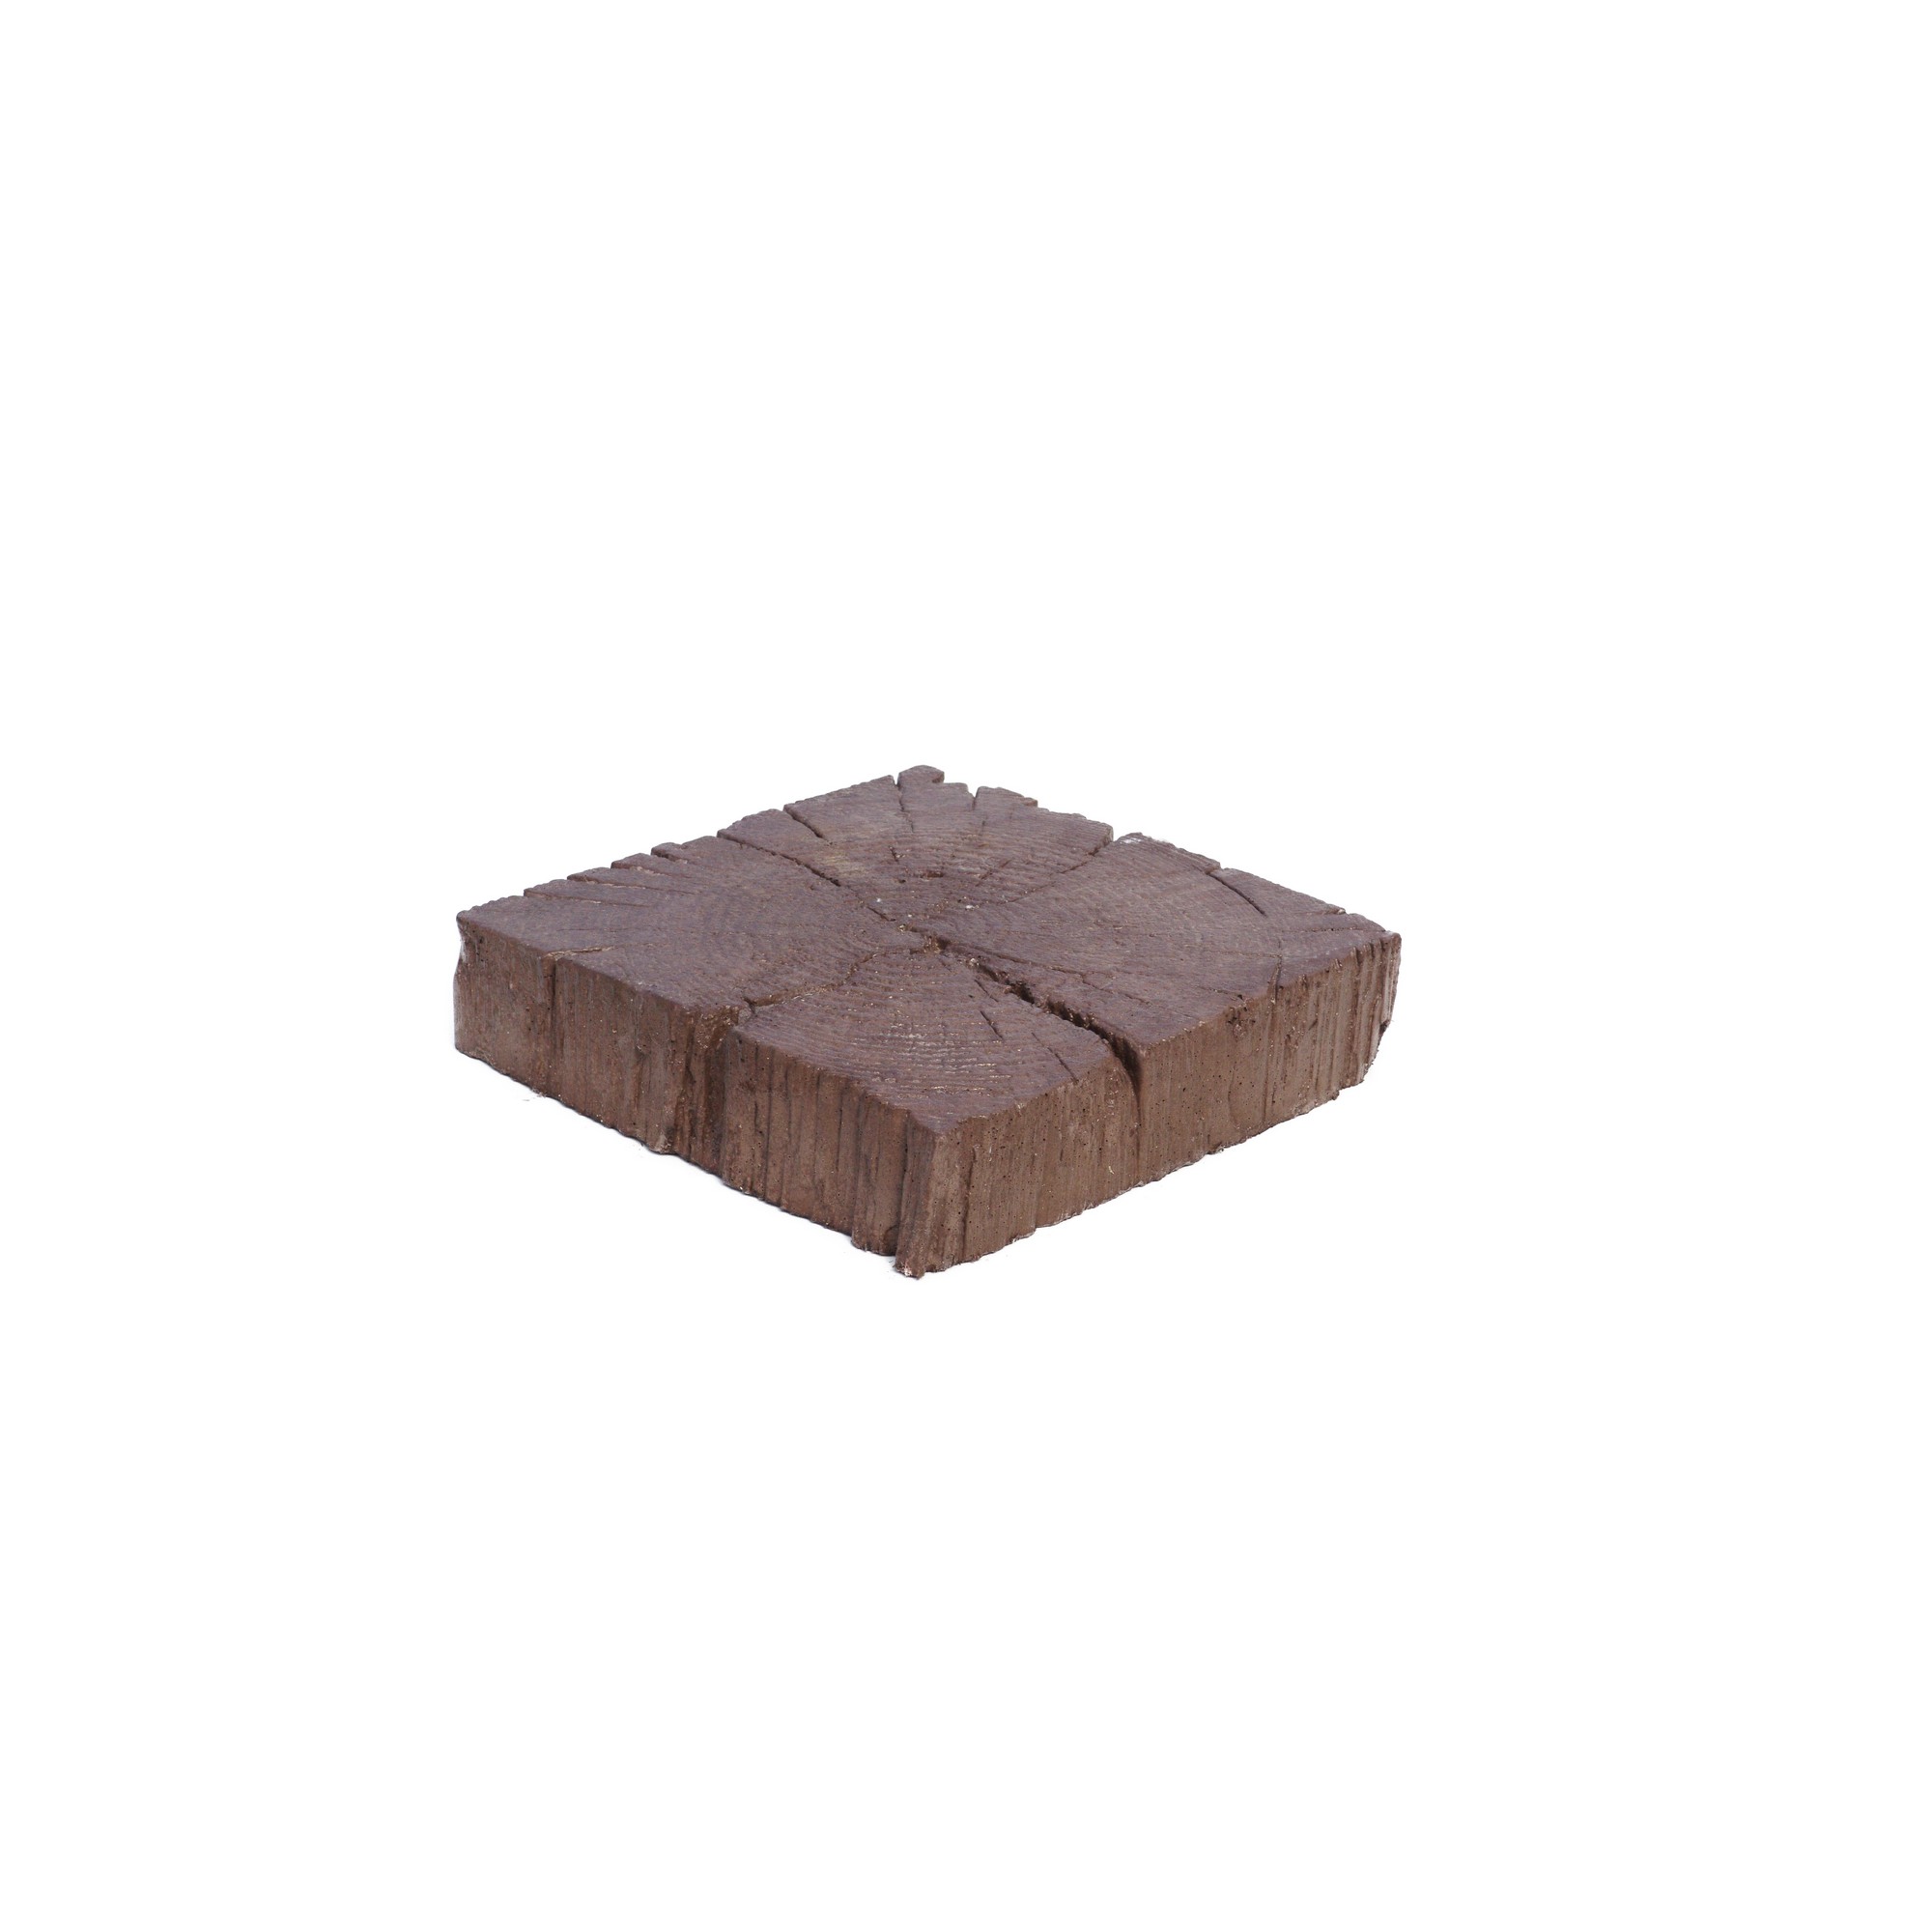 Dlažba betonová Presbeton BARK 3 reliéfní trám hnědá 225×225×50 mm PRESBETON